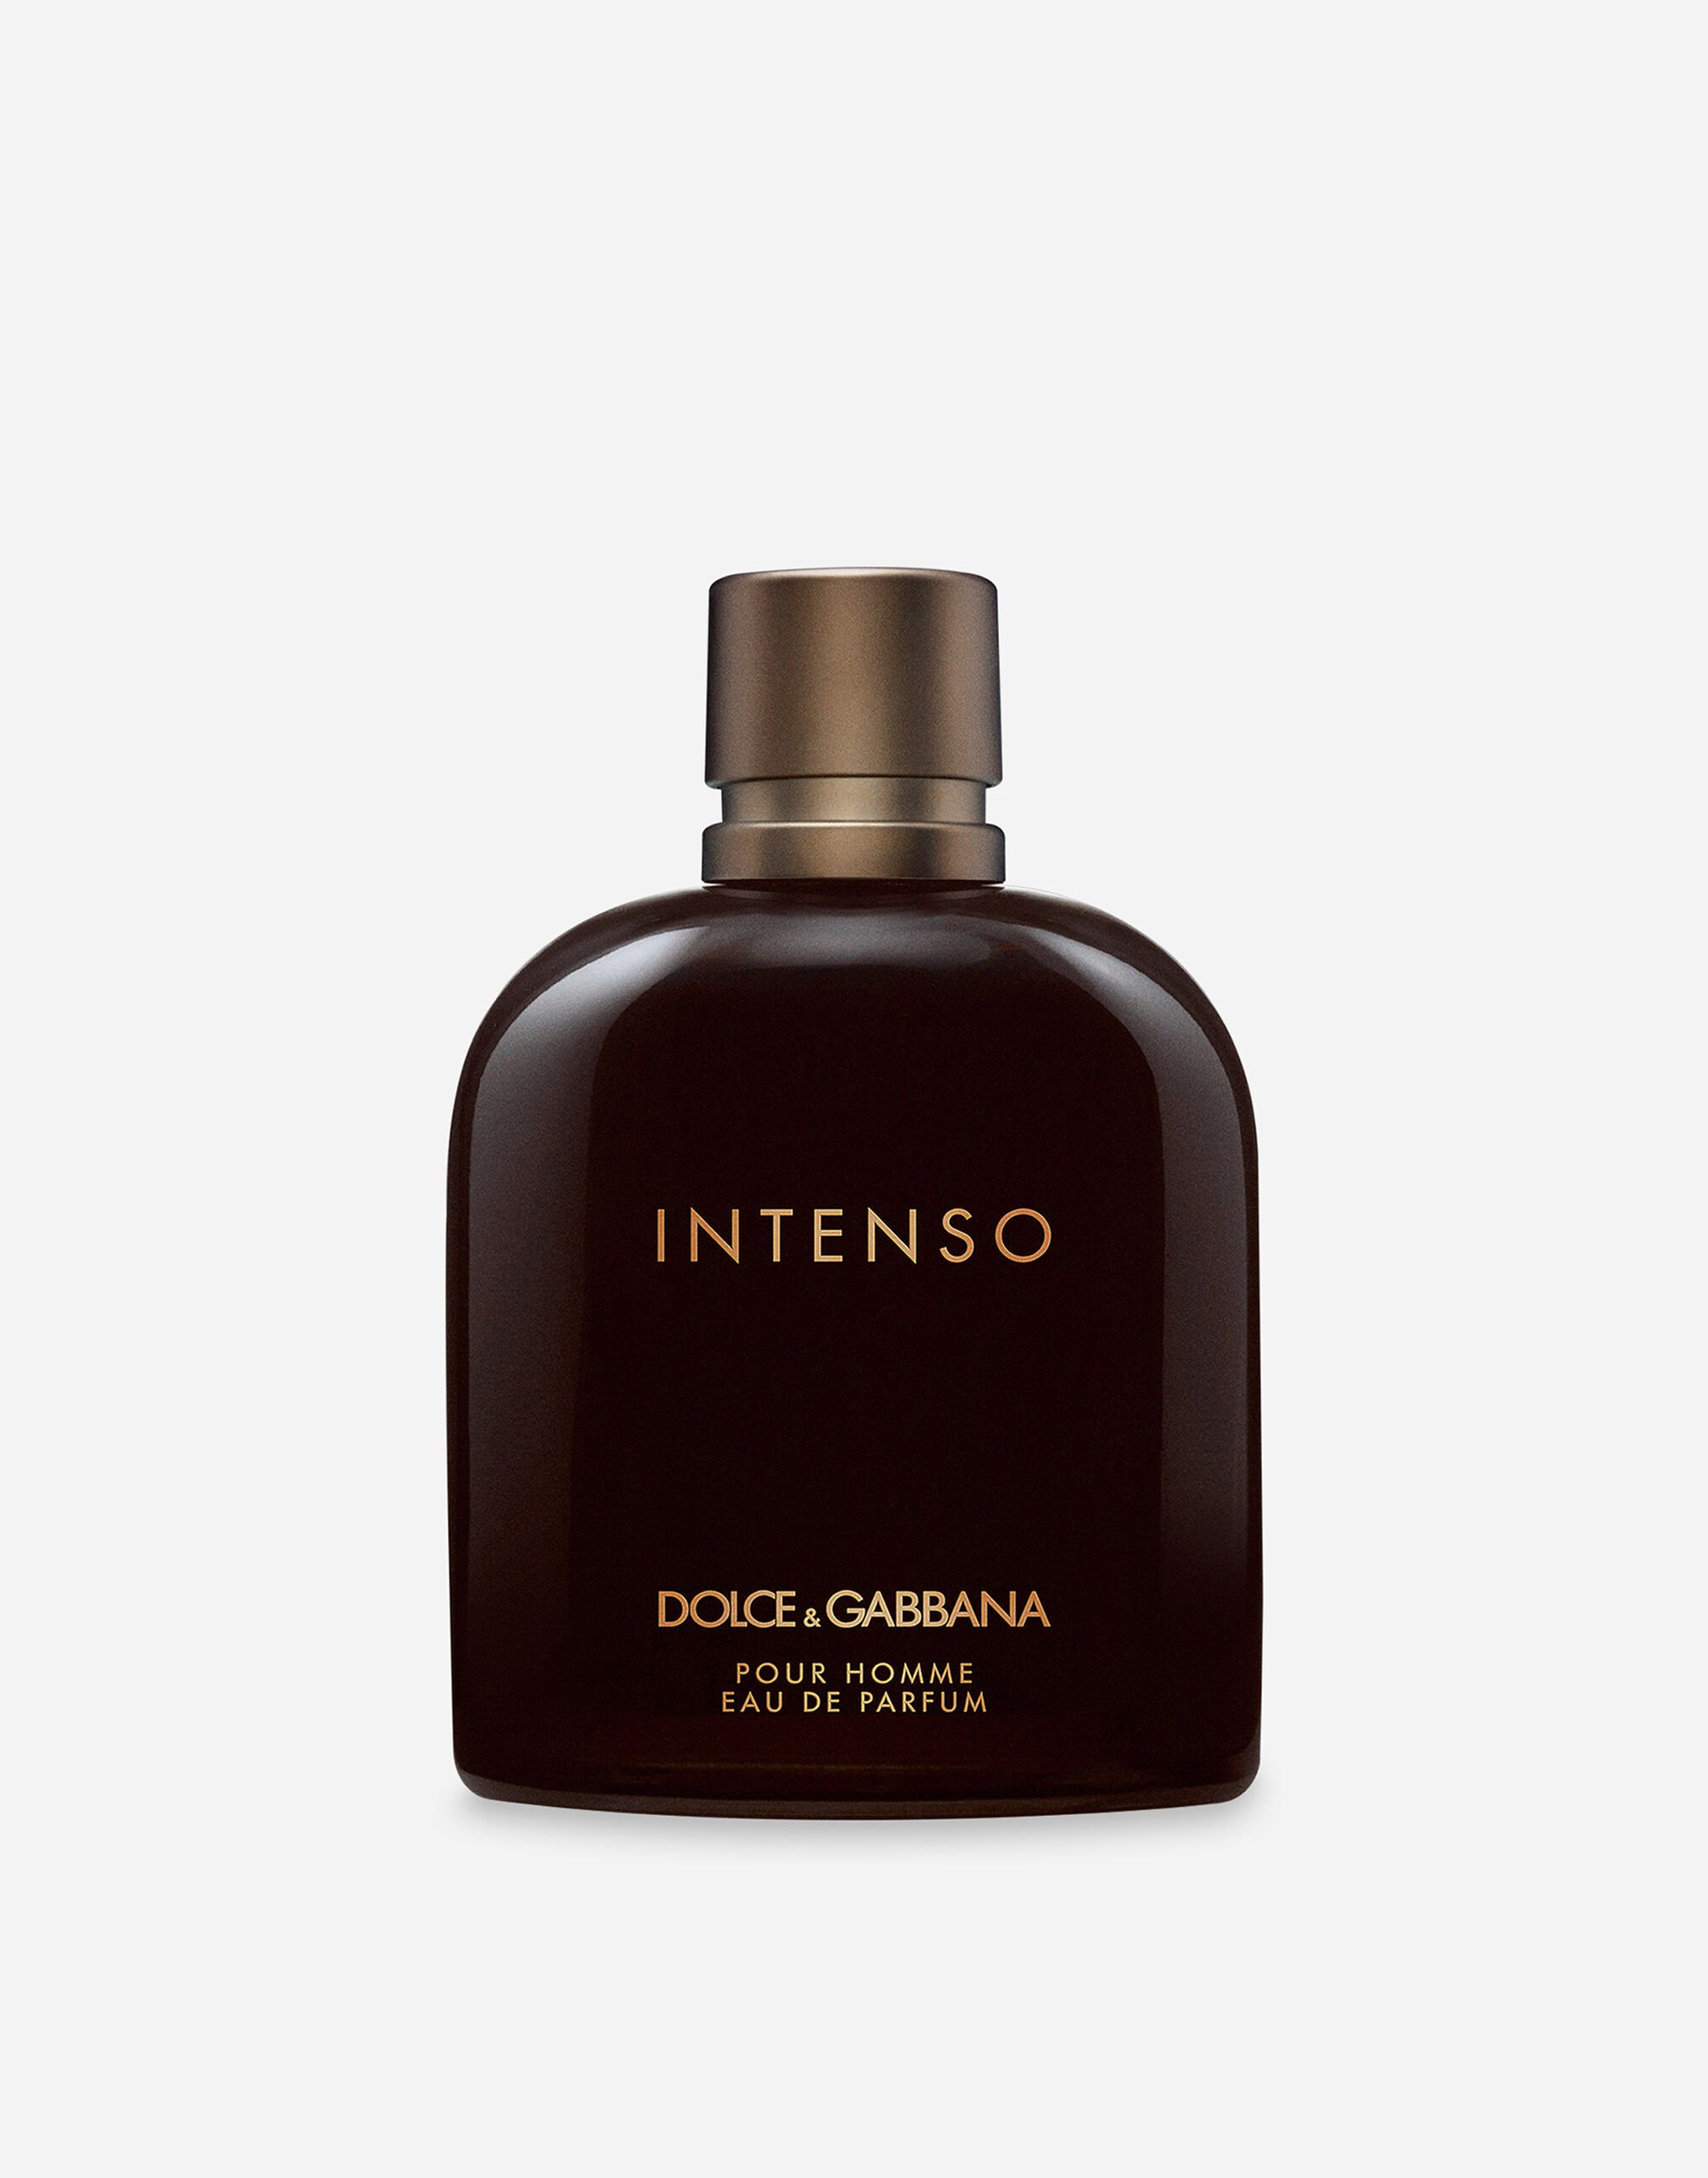 Dolce & Gabbana Intenso Eau de Parfum - VP001UVP000